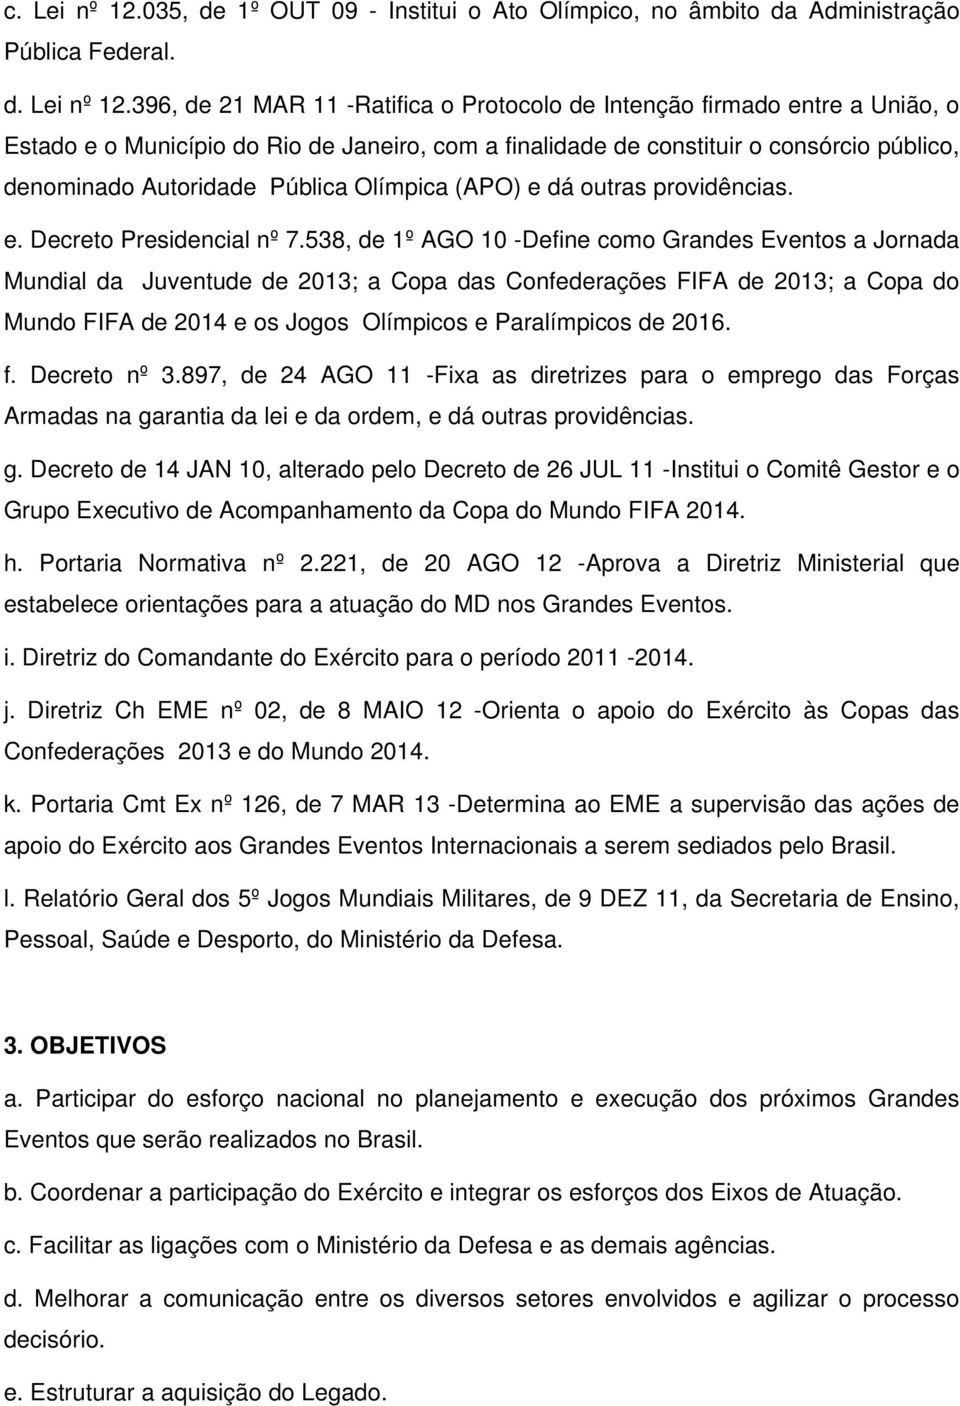 396, de 21 MAR 11 -Ratifica o Protocolo de Intenção firmado entre a União, o Estado e o Município do Rio de Janeiro, com a finalidade de constituir o consórcio público, denominado Autoridade Pública